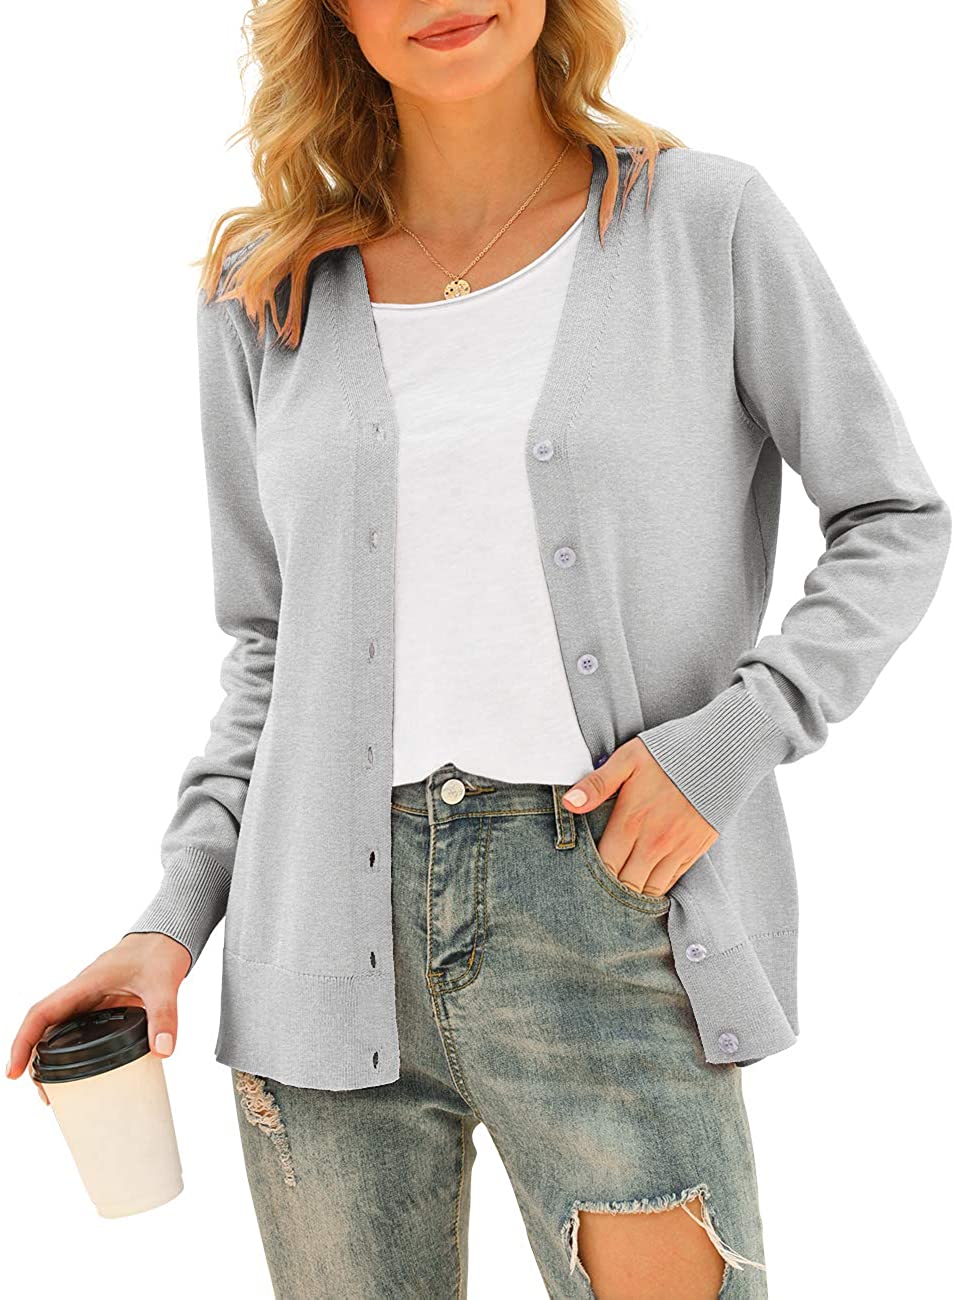 Long Sleeve Soft Basic Knit Cardigan | eBay